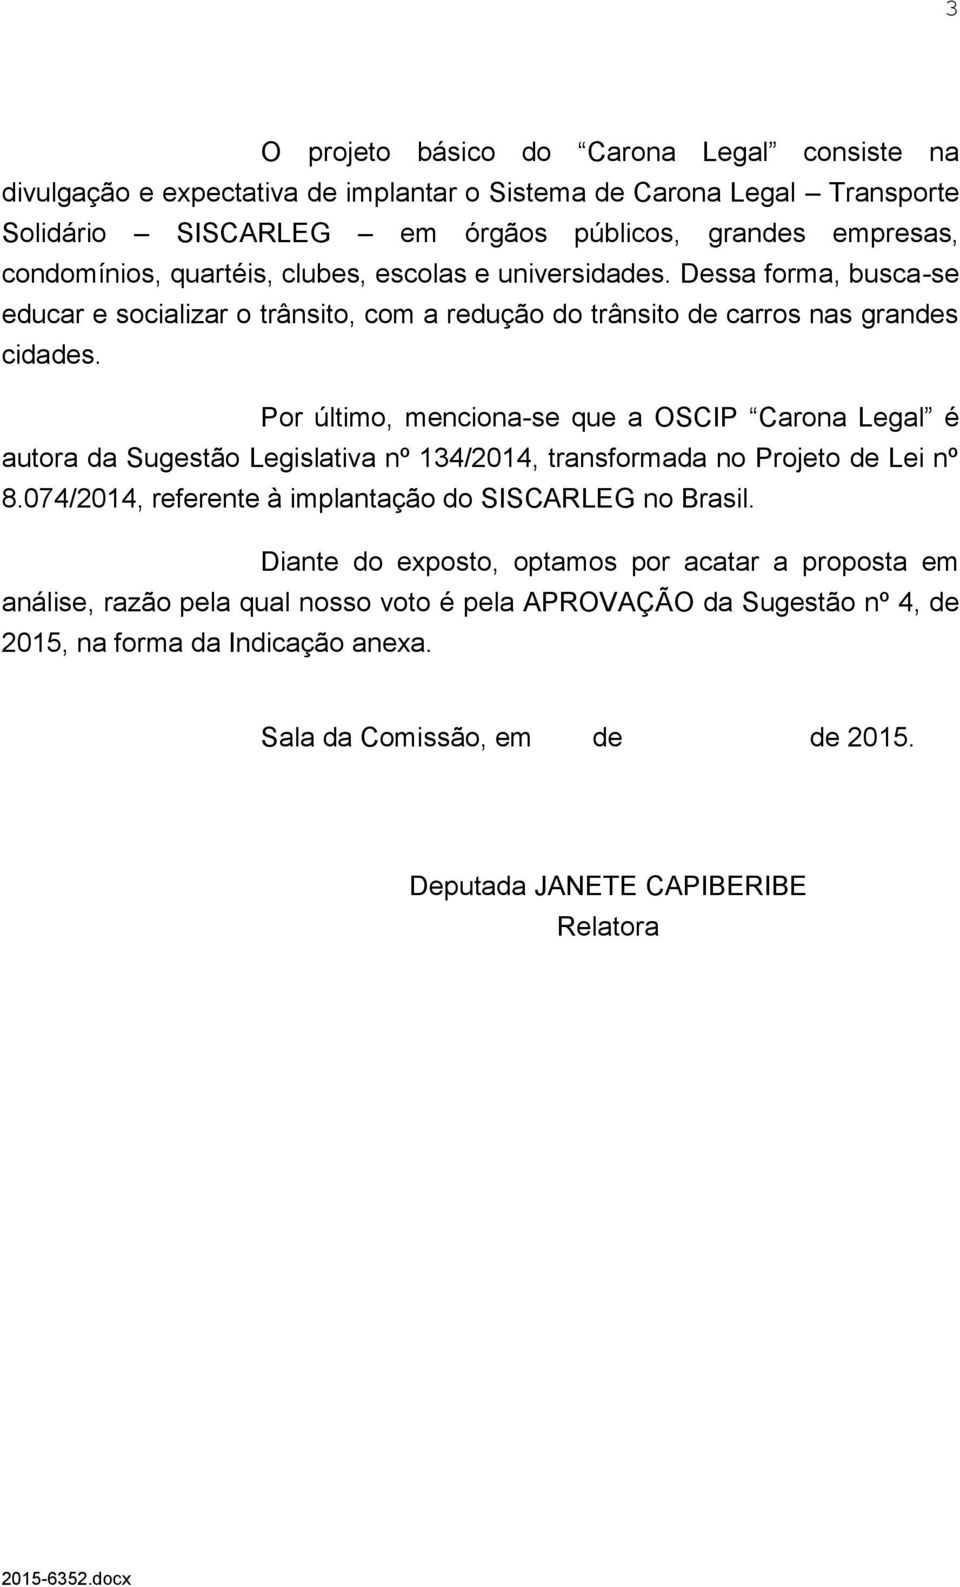 Por último, menciona-se que a OSCIP Carona Legal é autora da Sugestão Legislativa nº 134/2014, transformada no Projeto de Lei nº 8.074/2014, referente à implantação do SISCARLEG no Brasil.